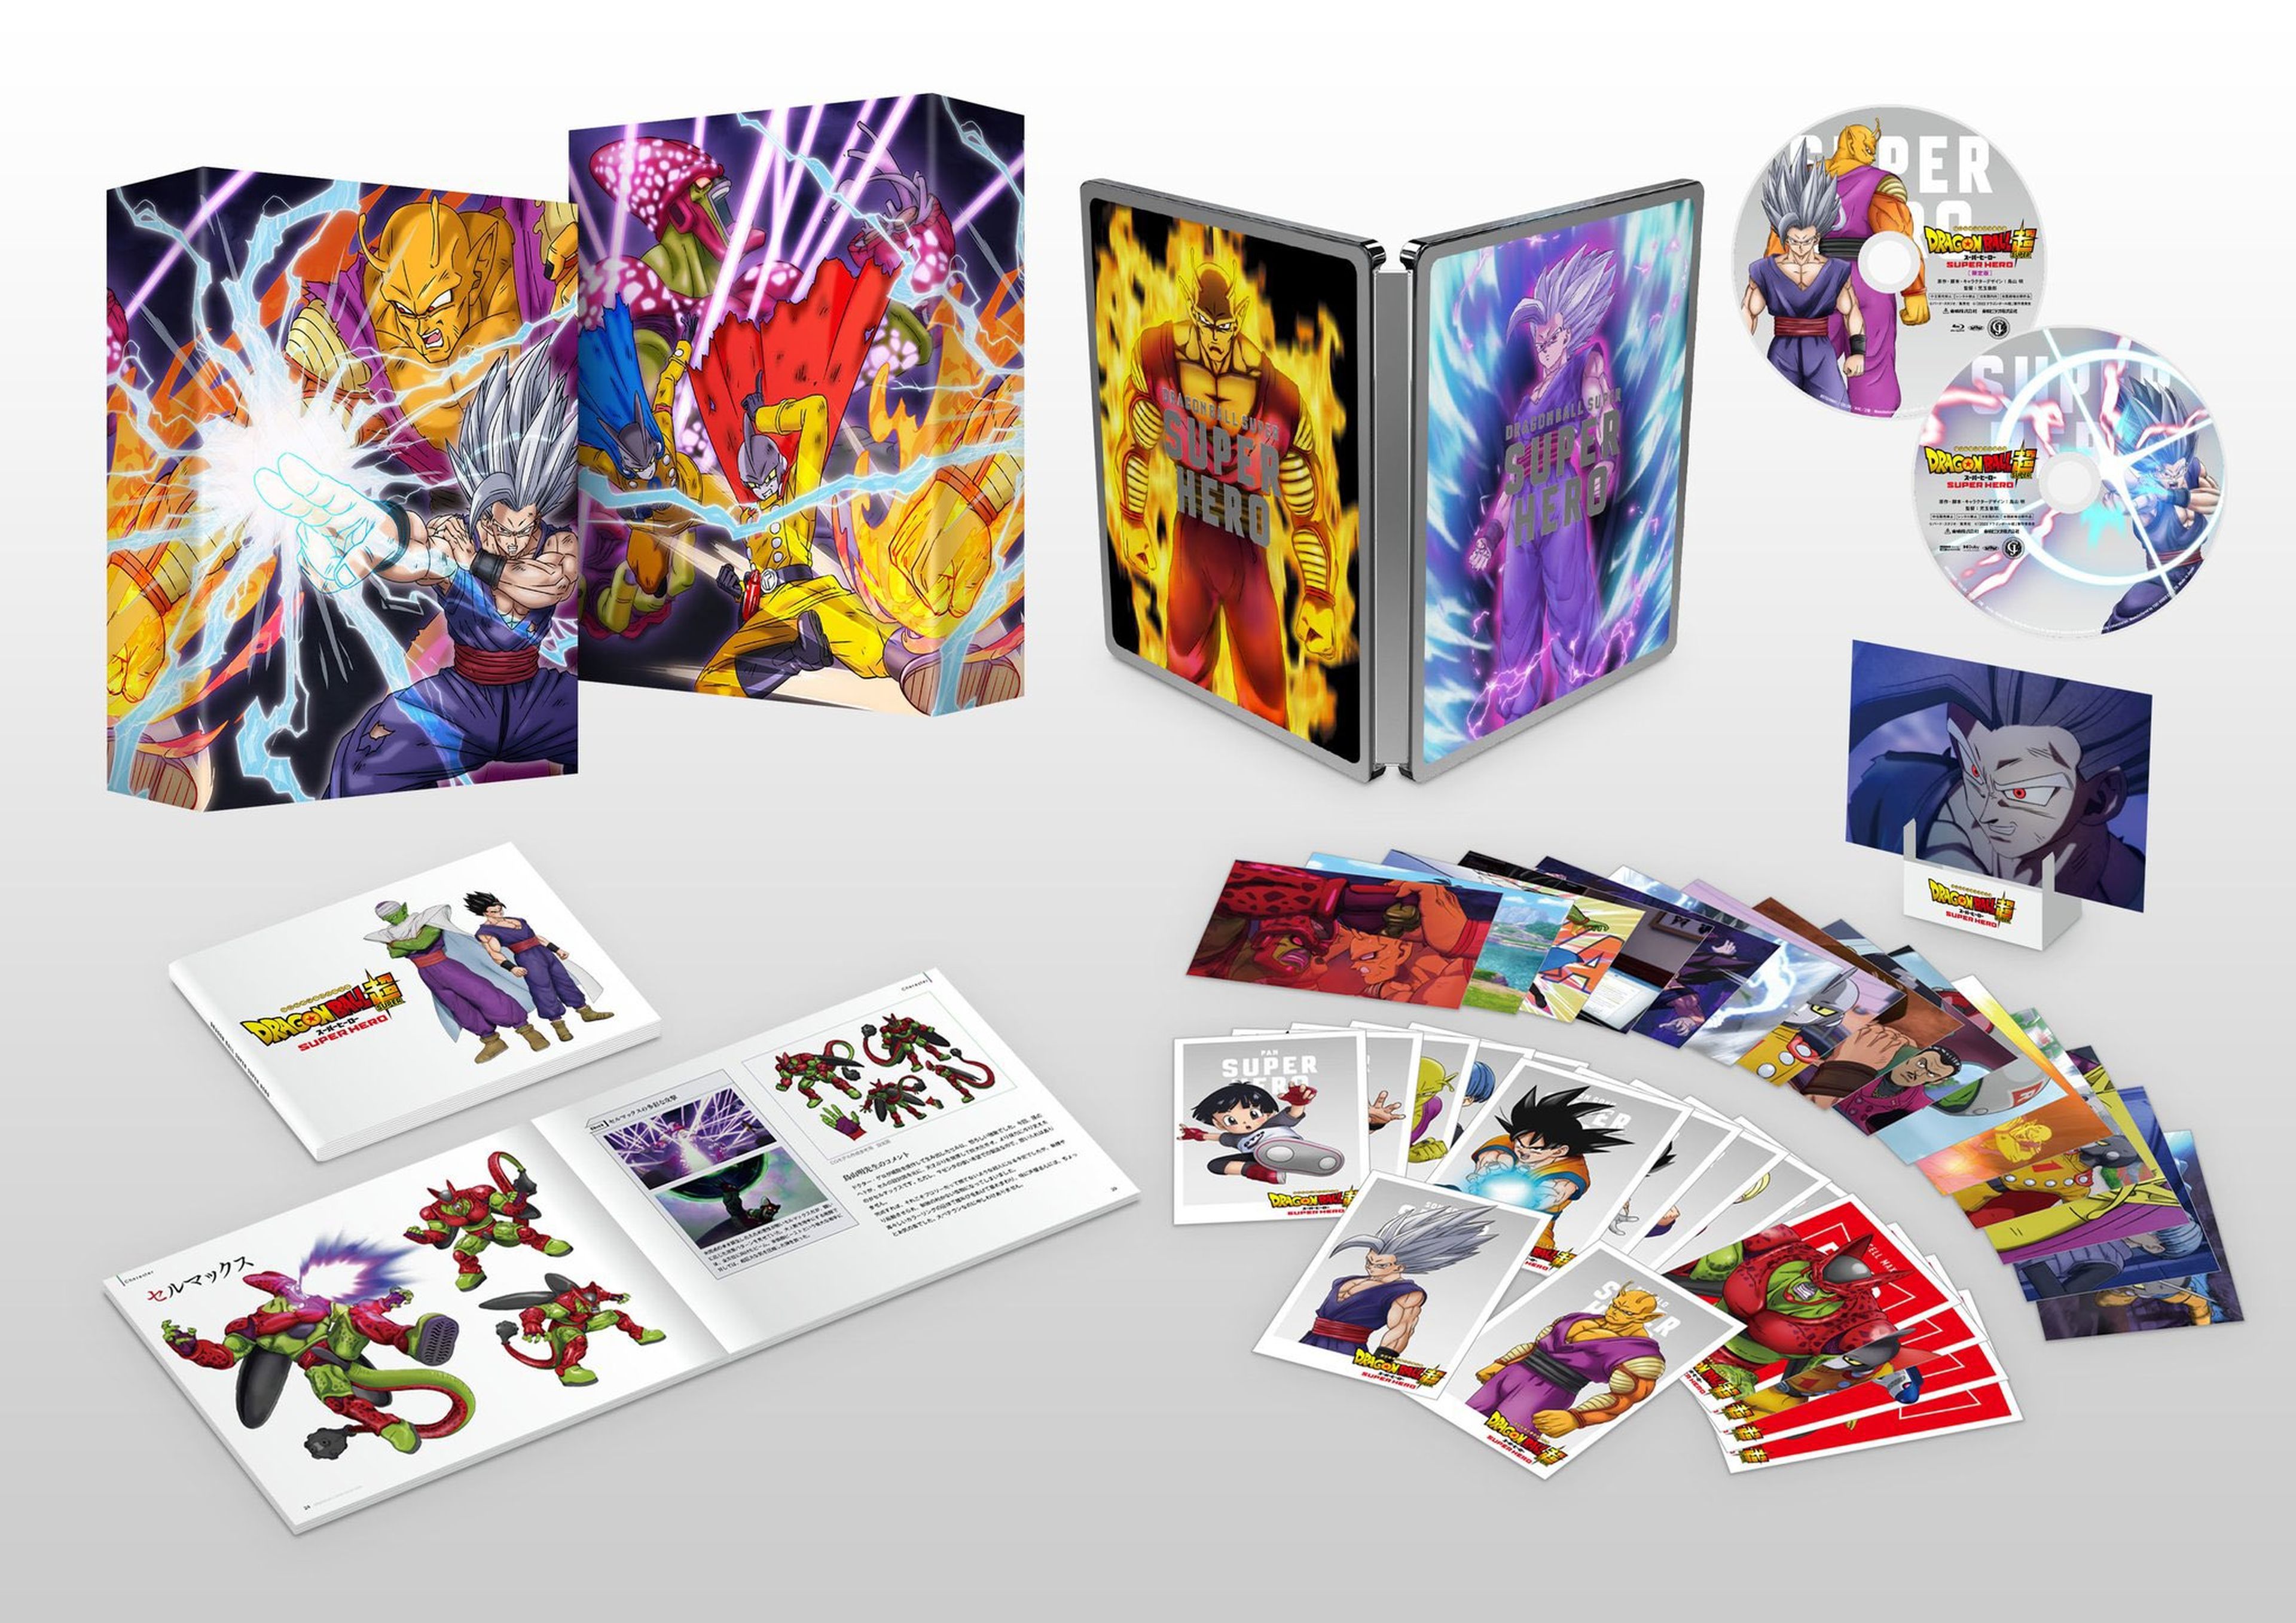 Dragon Ball Super: Super Hero - Desvelada la edición coleccionista de la película. ¡Viene llena de sorpresas por los fans!